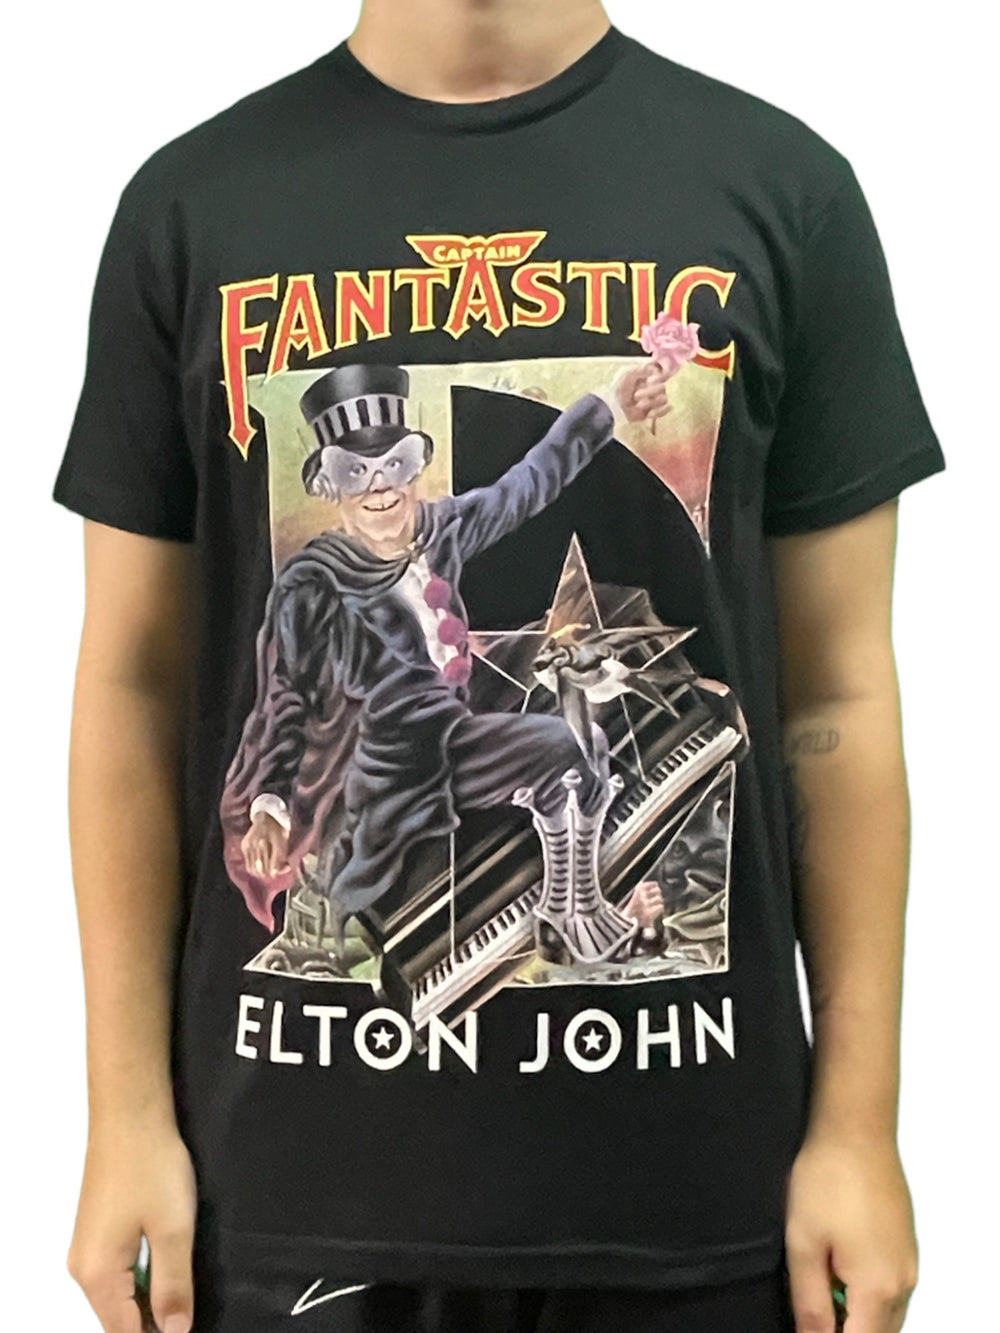 Elton John Captain Fantastic Unisex Official T Shirt Brand New Various Sizes